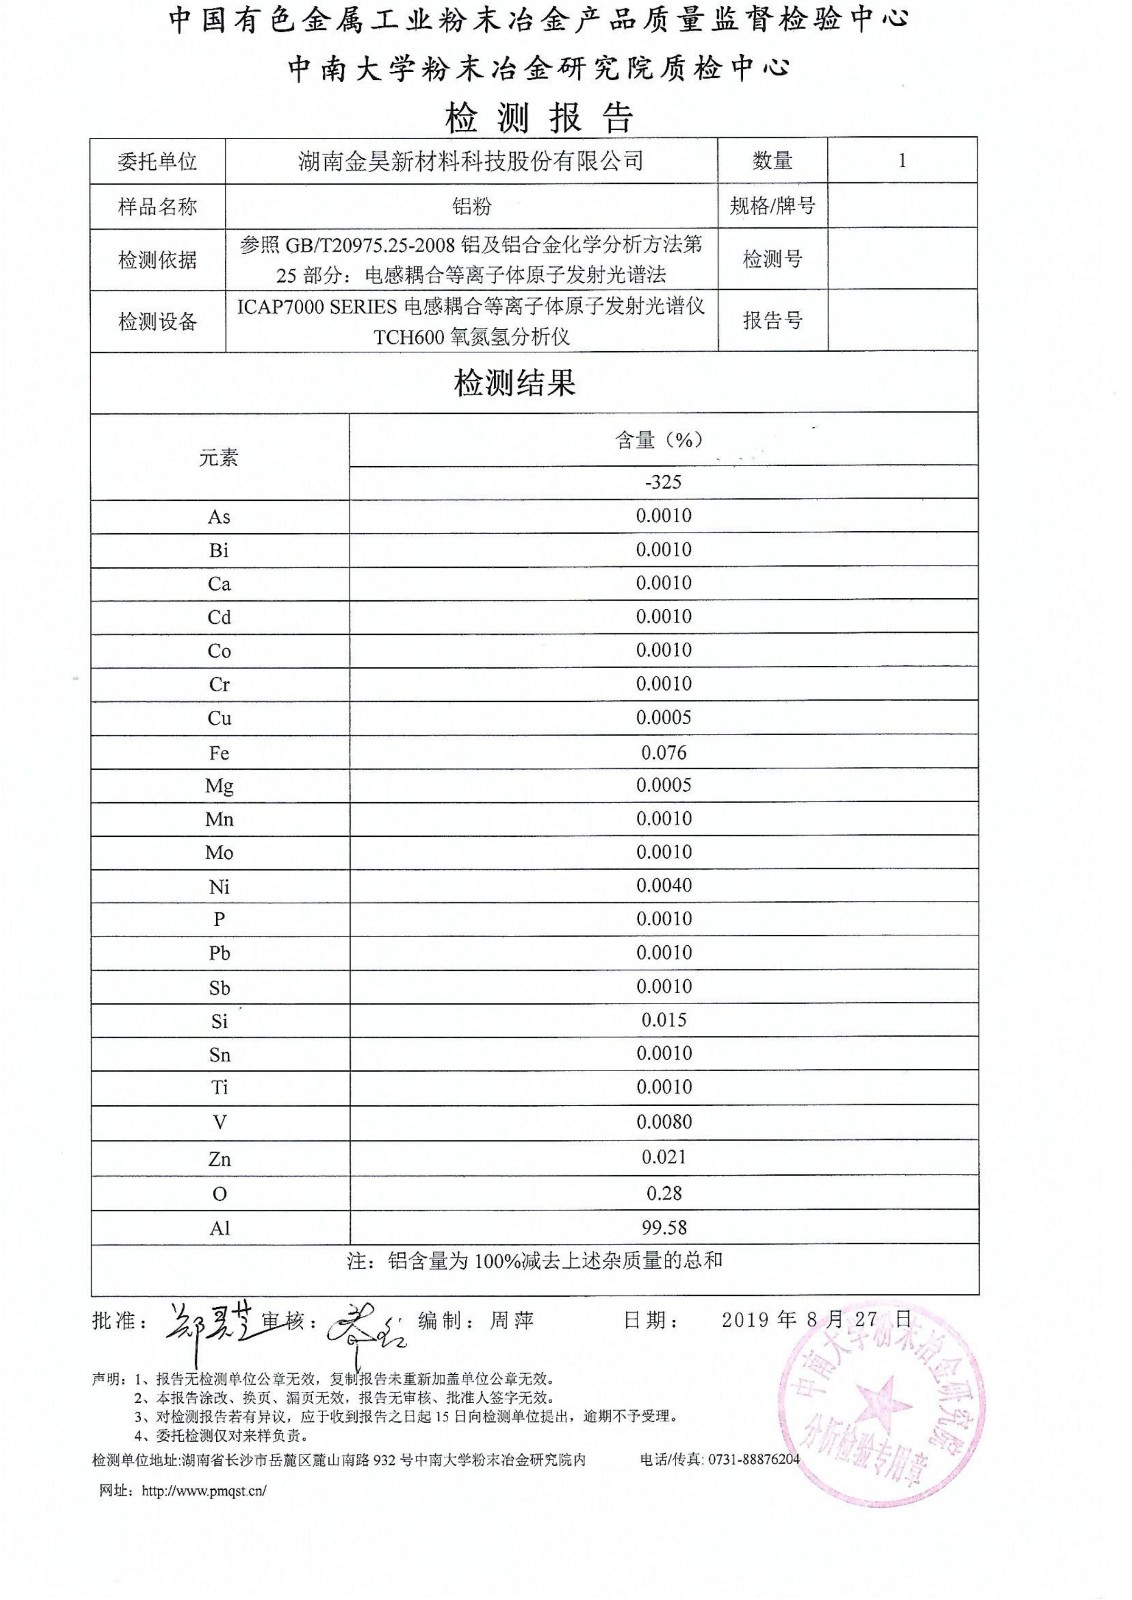 2019年9月6号中南大学铝粉纯度检测报告_00.jpg